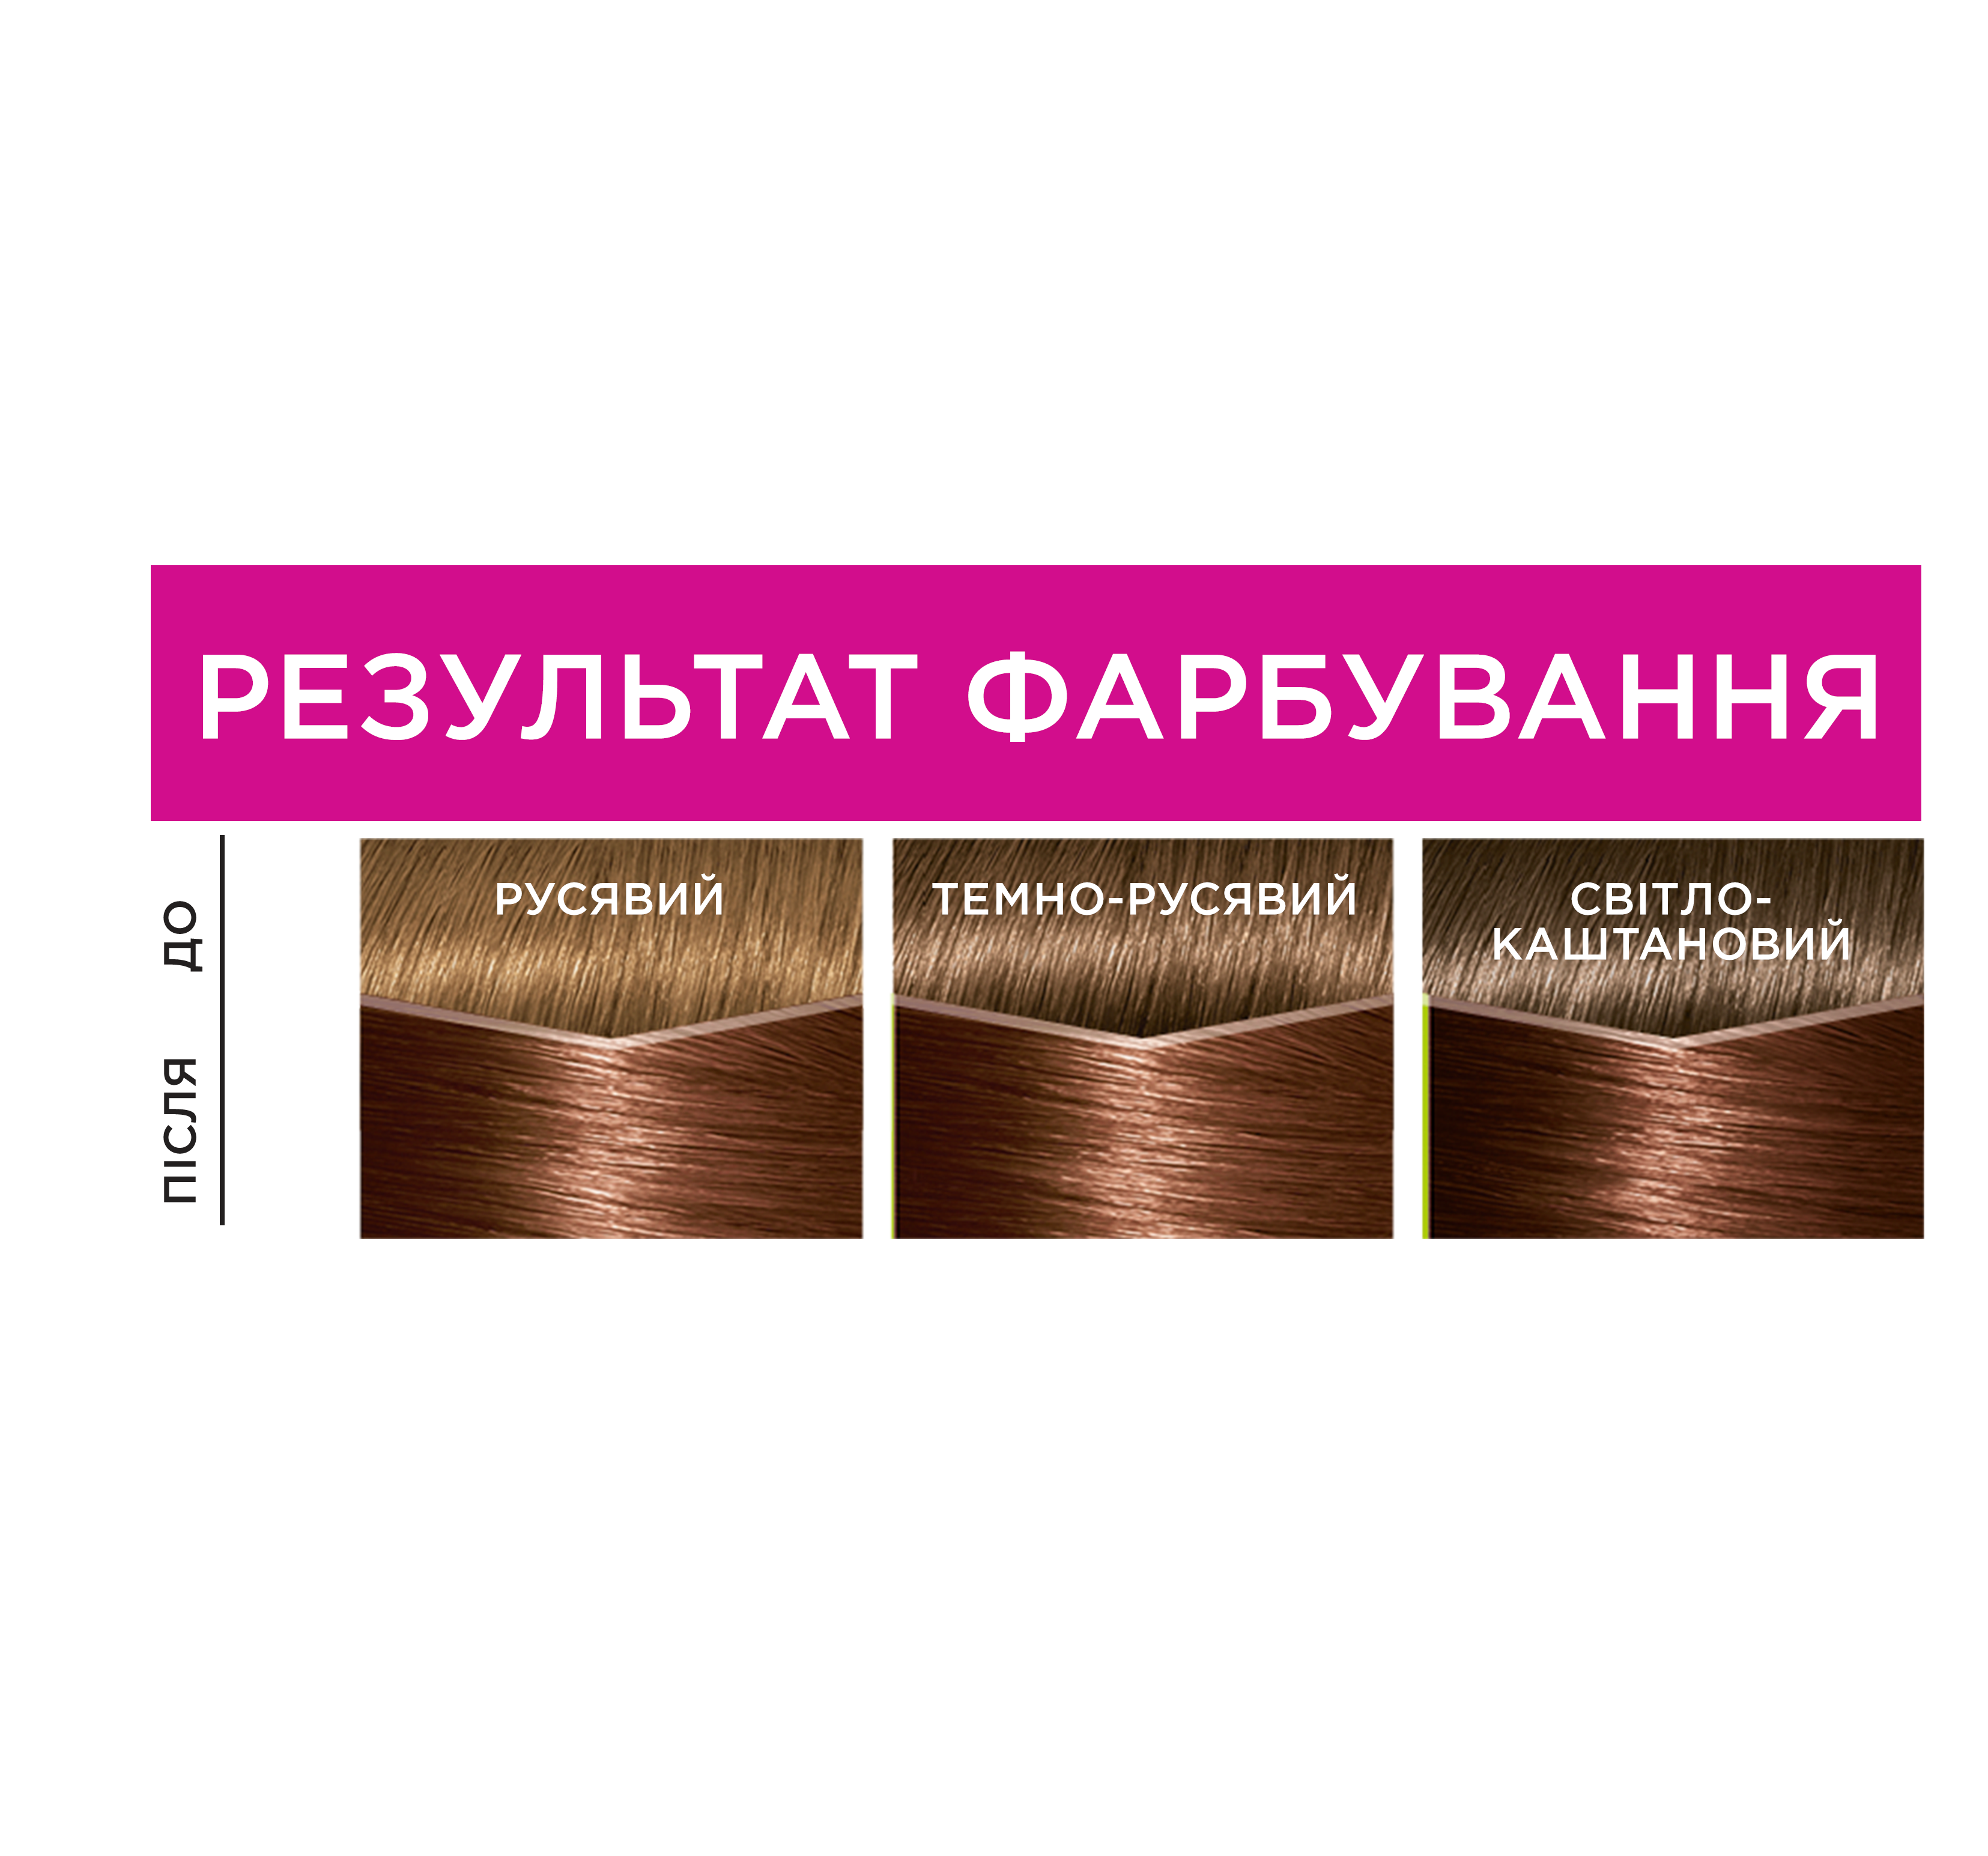 Фарба-догляд для волосся без аміаку L'Oreal Paris Casting Creme Gloss, відтінок 635 (Шоколадне праліне), 120 мл (A8493076) - фото 4